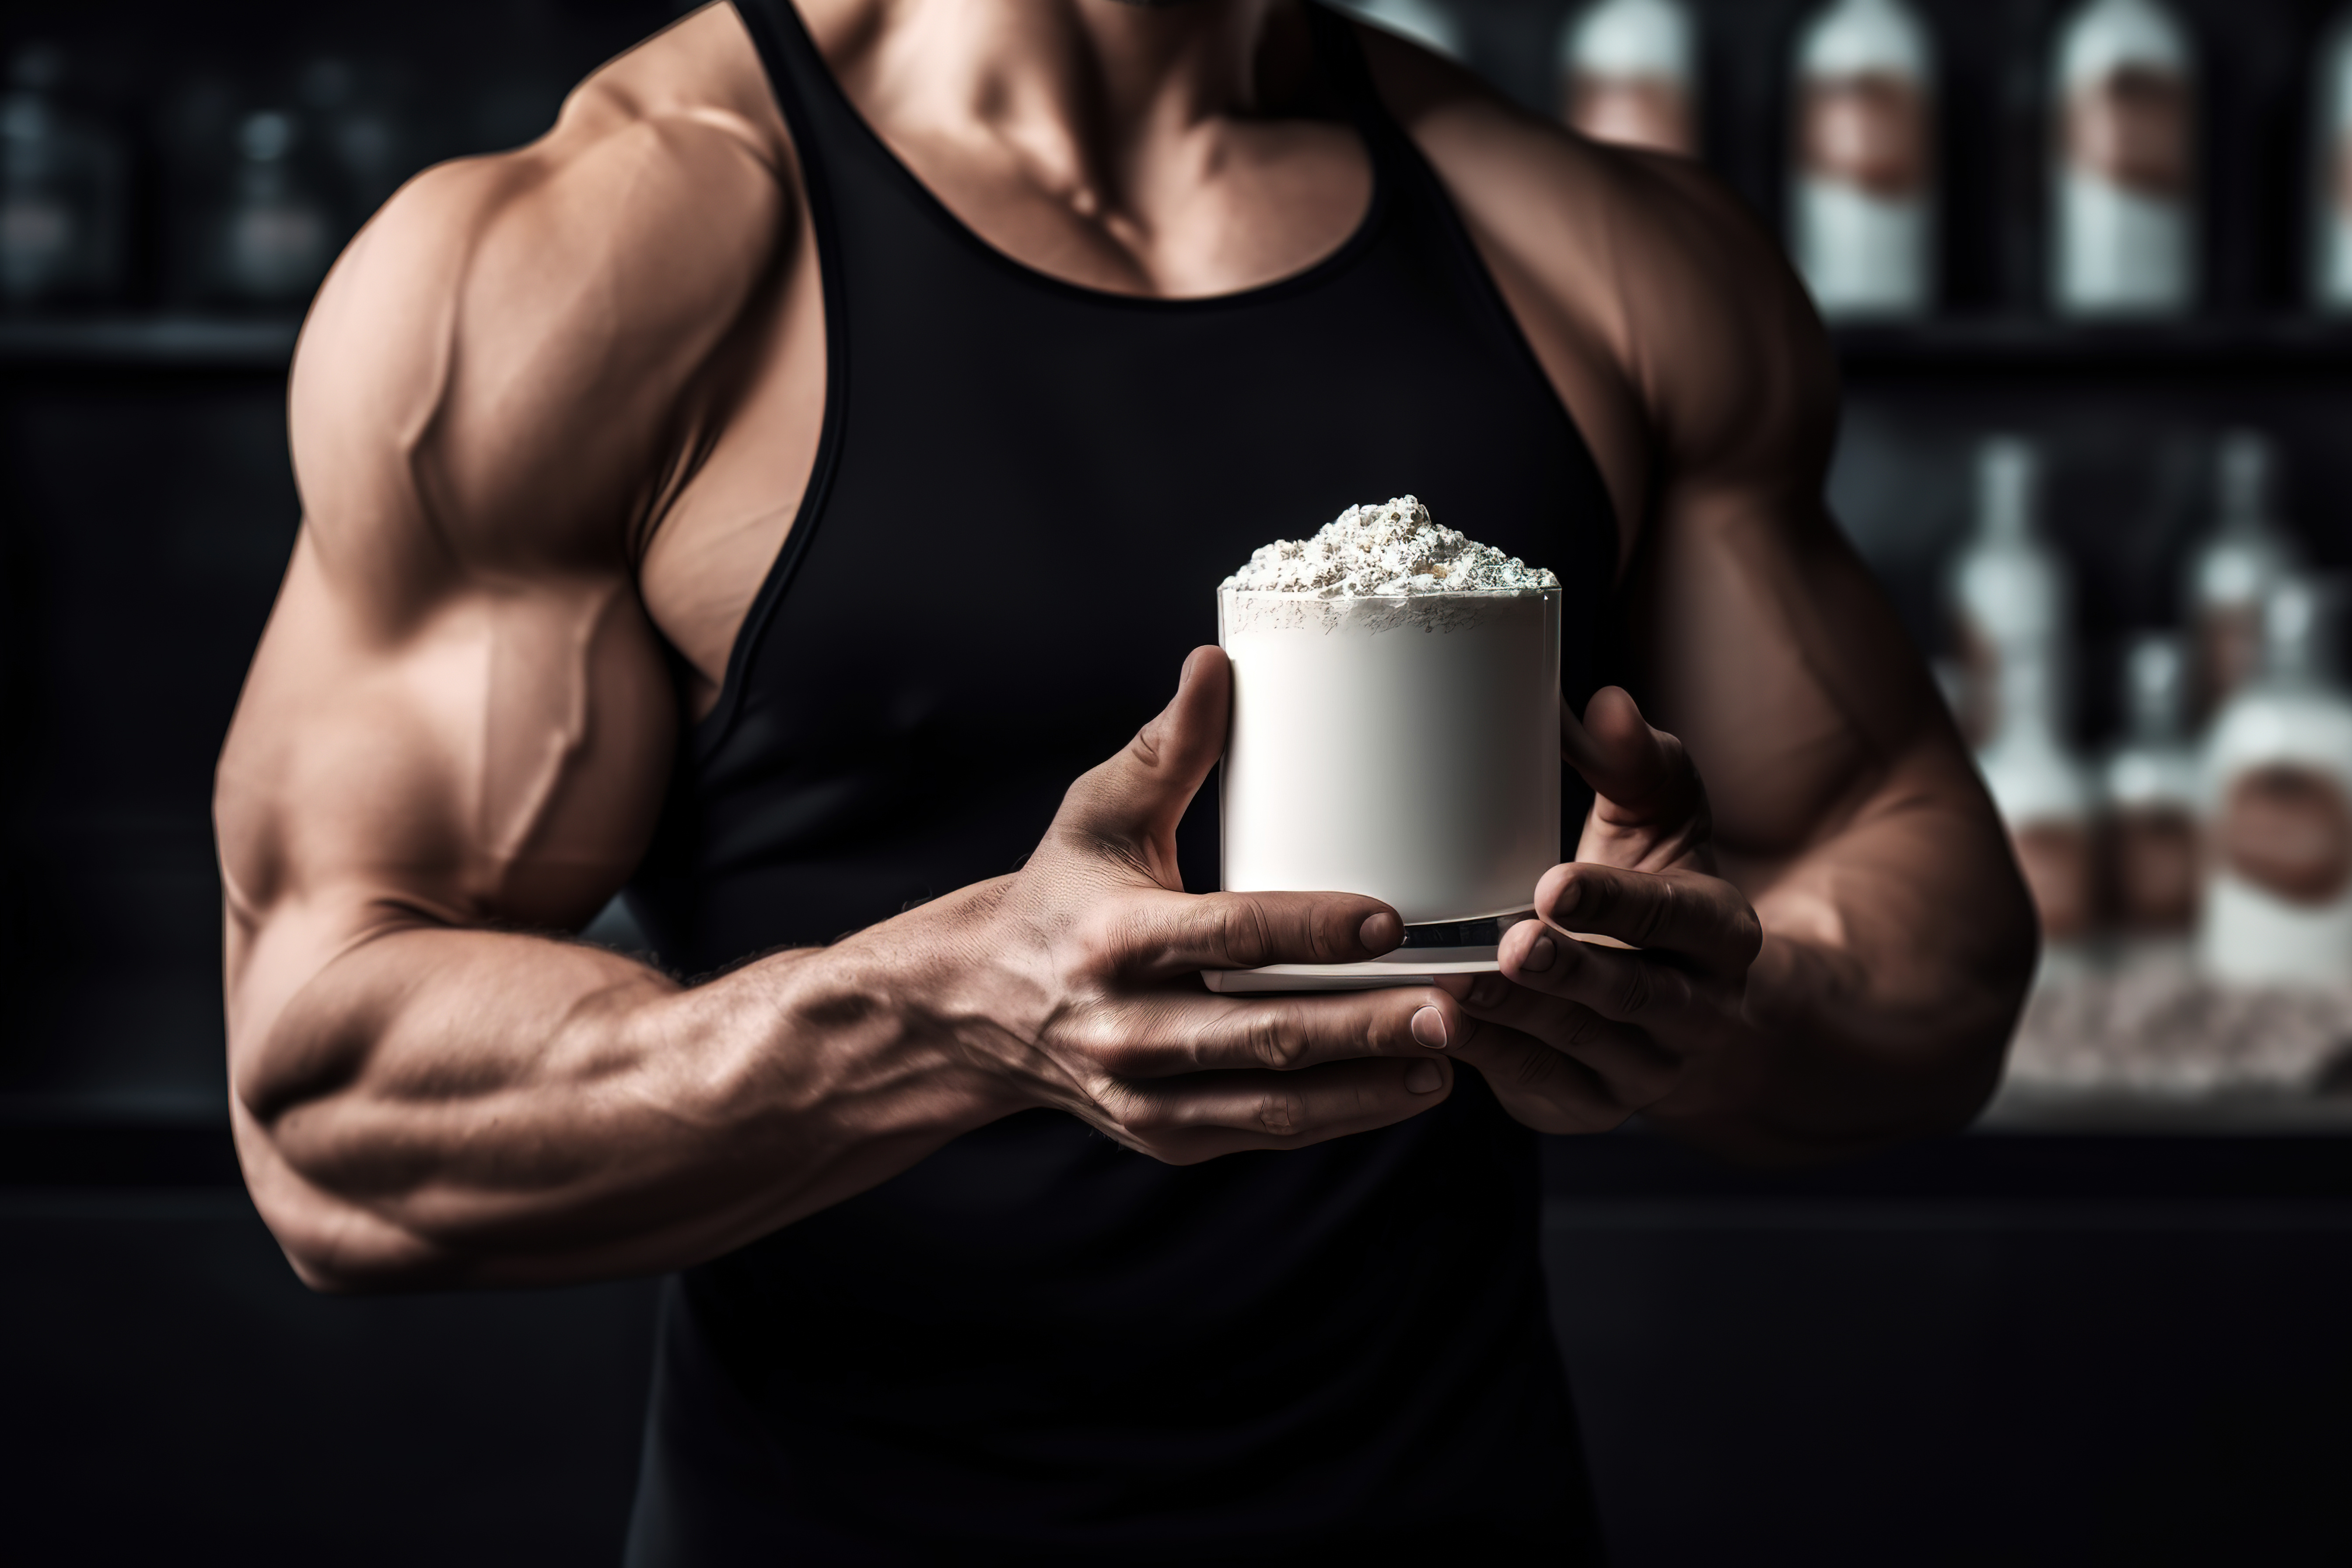 Découvrez ce que dit la science sur le mythe de la musculation et la croissance. © dashu83, Adobe Stock